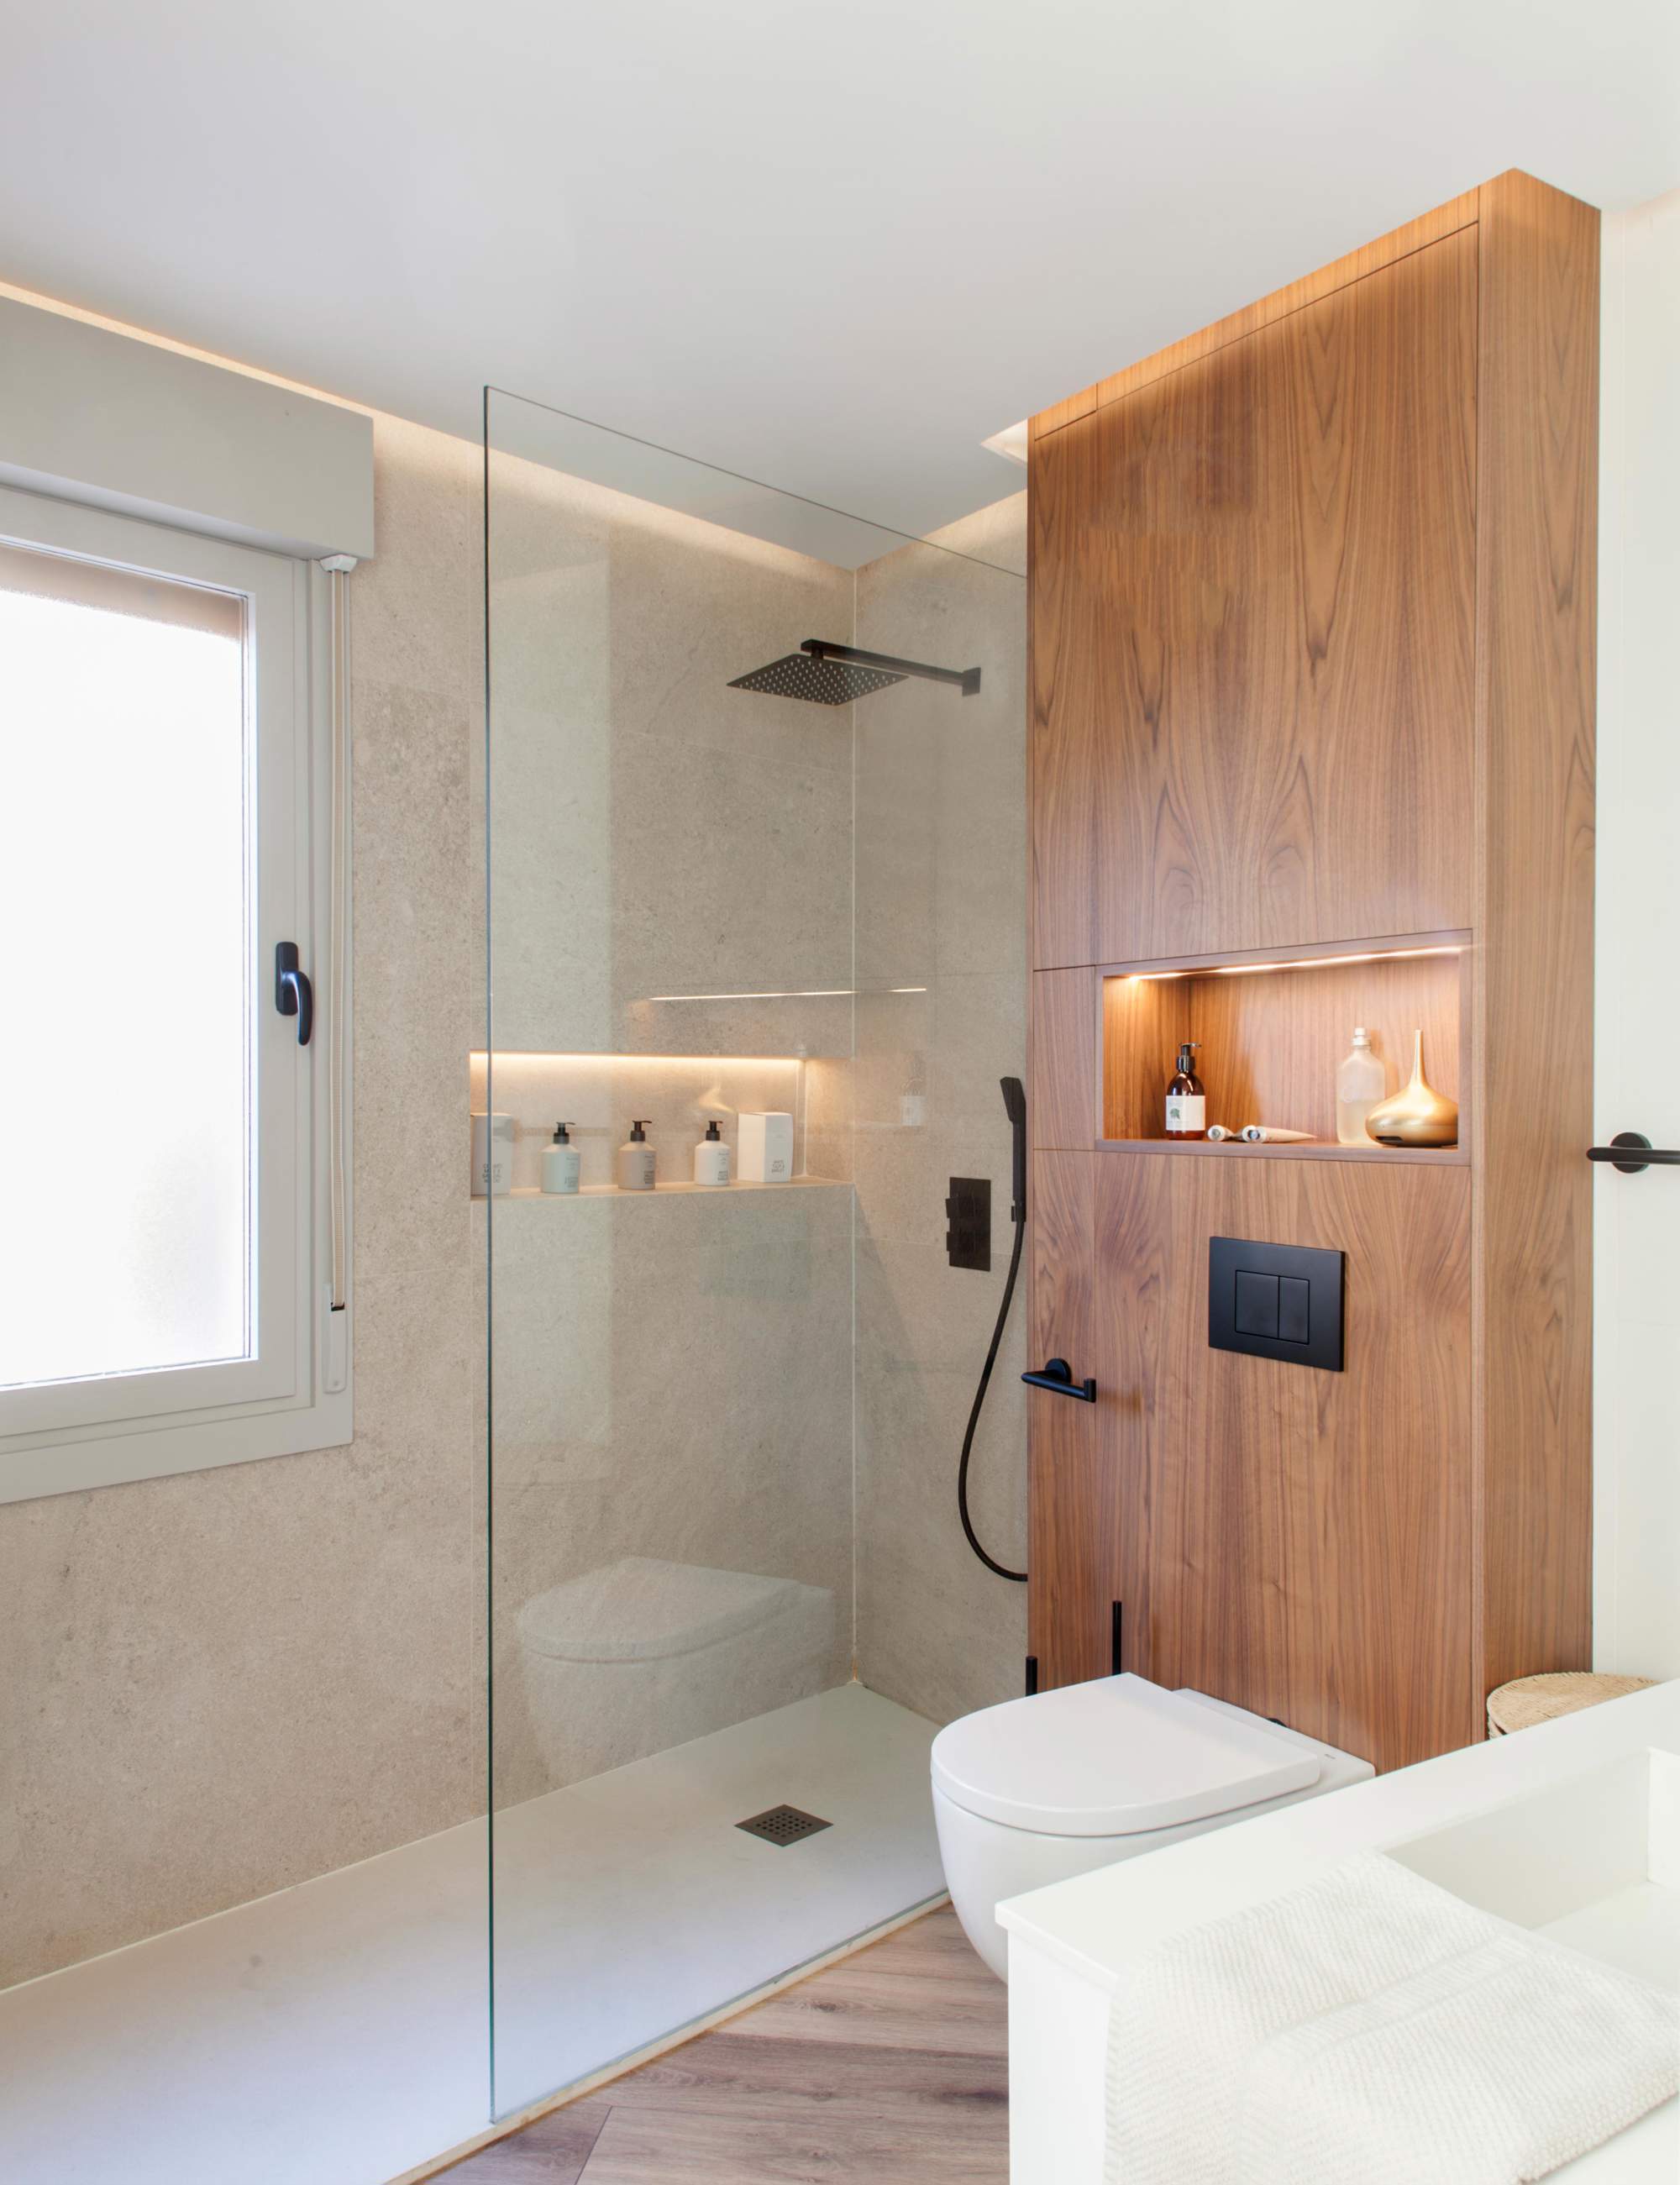 Baño moderno con ducha y mueble encima del wc.